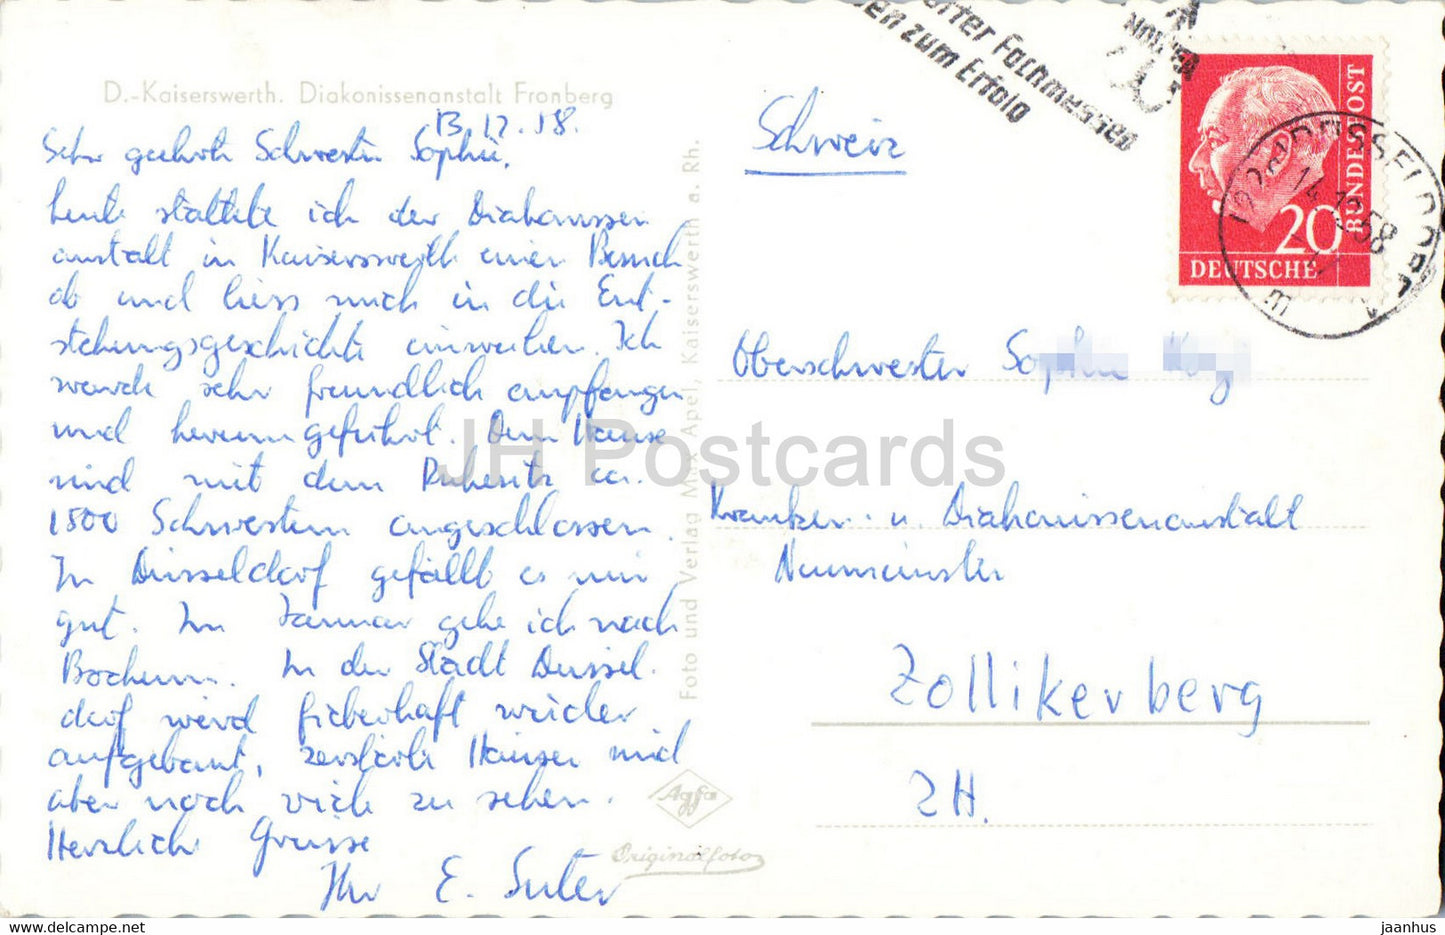 D Kaiserswerth - Diakonissenanstalt Fronberg - alte Postkarte - 1958 - Deutschland - gebraucht